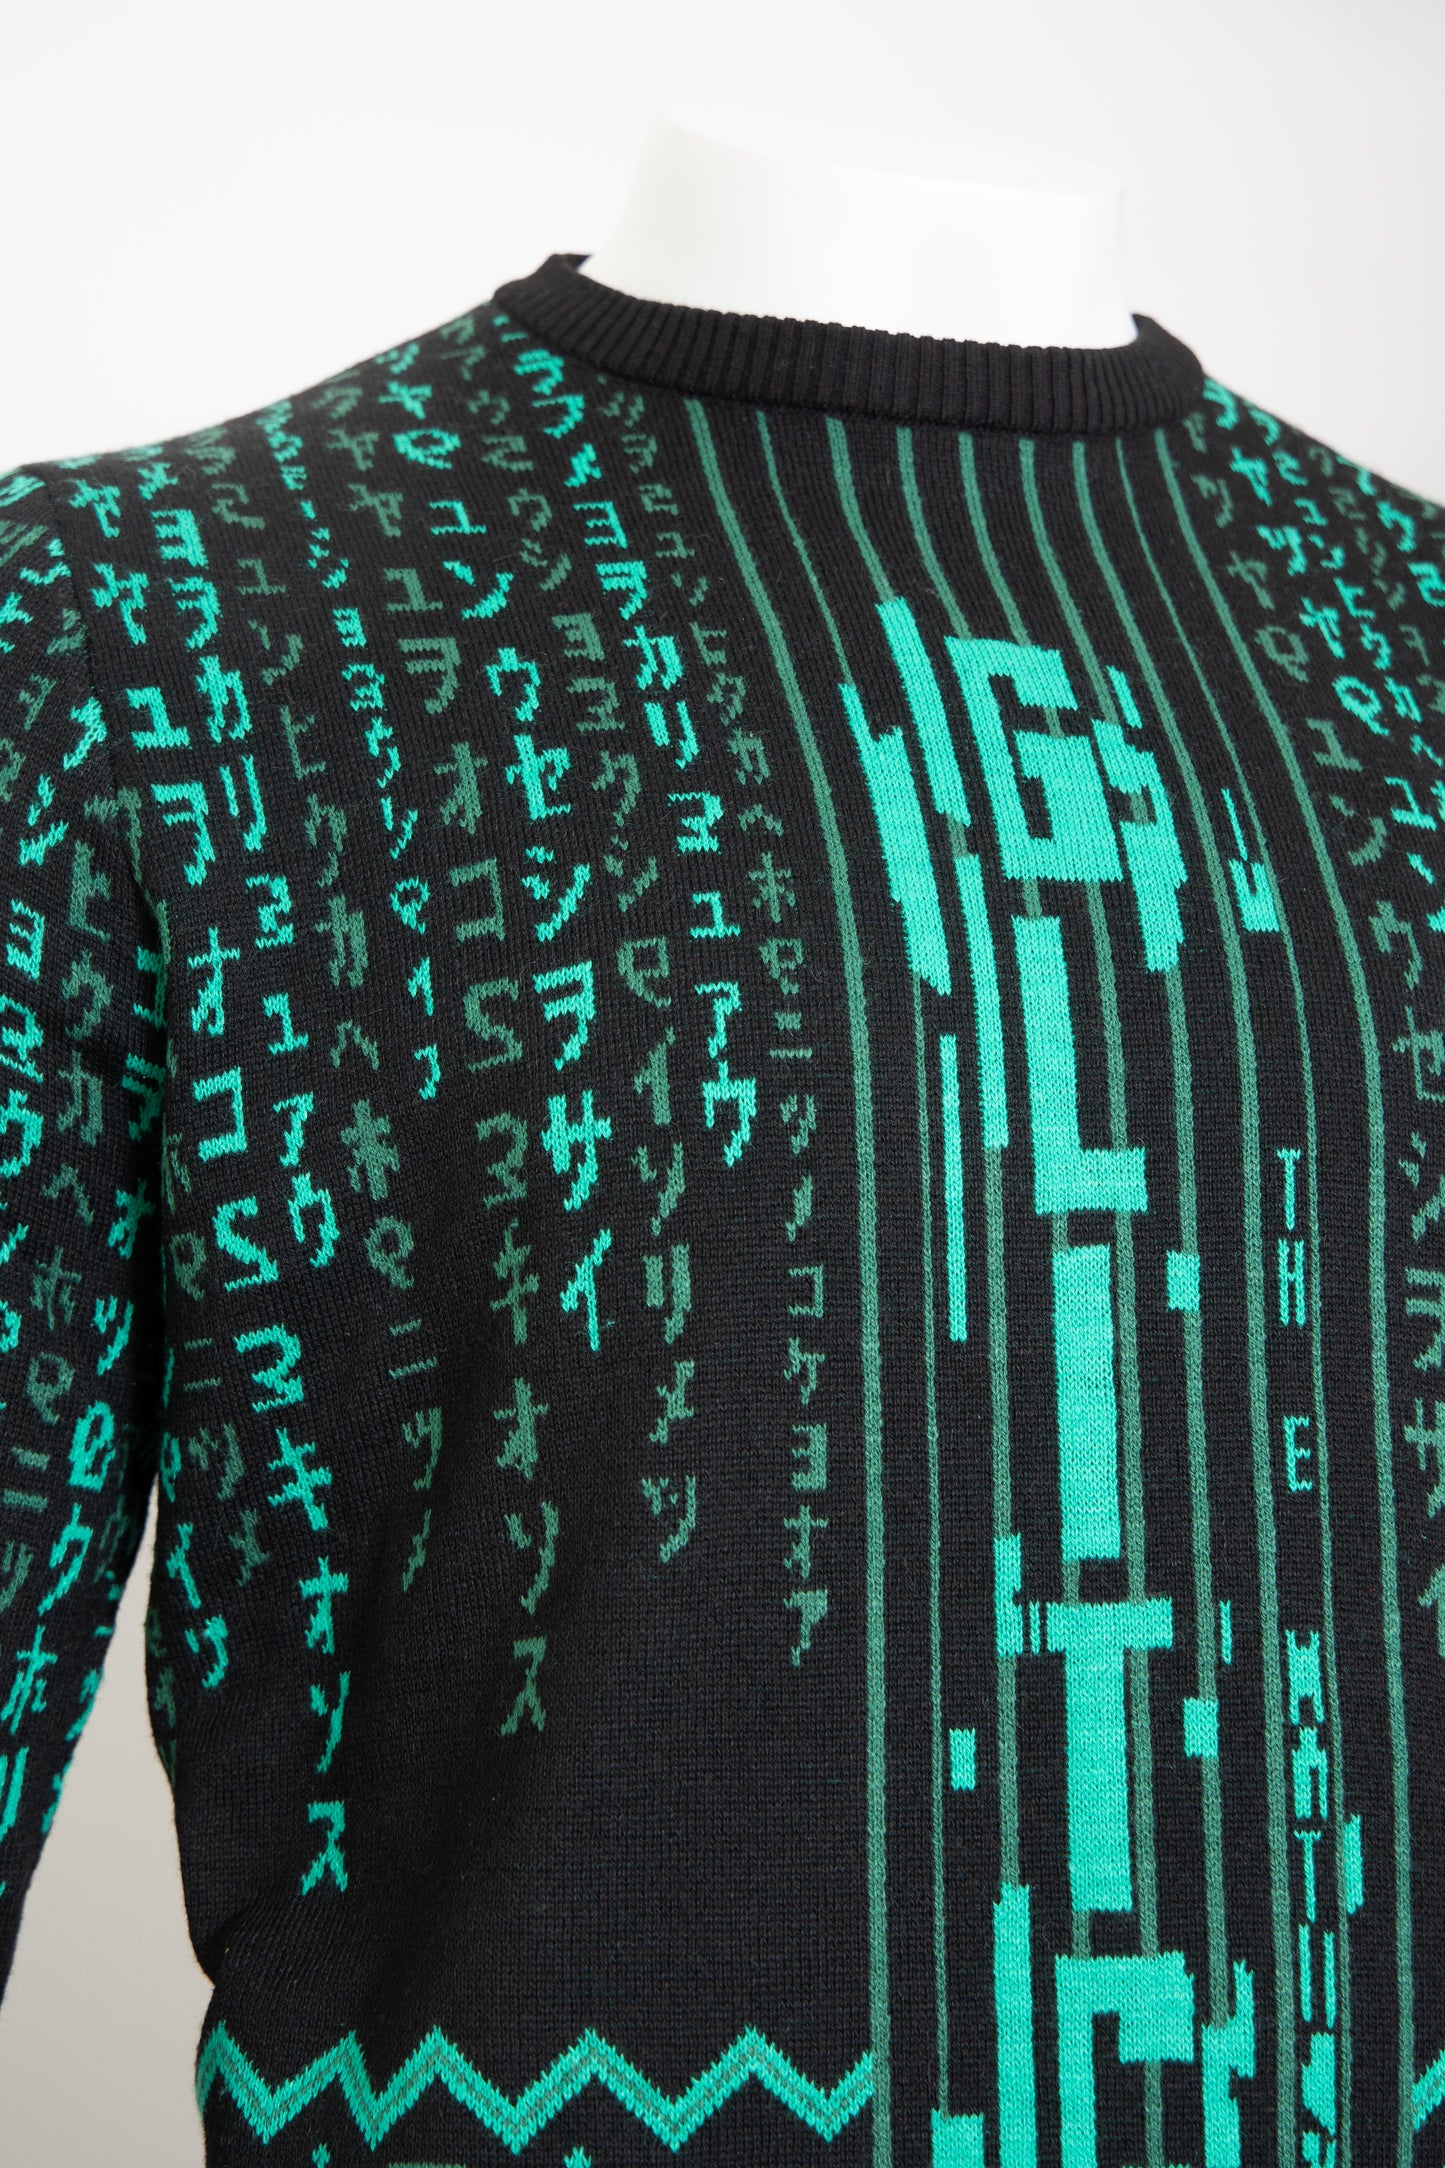 Matrix Christmas sweater